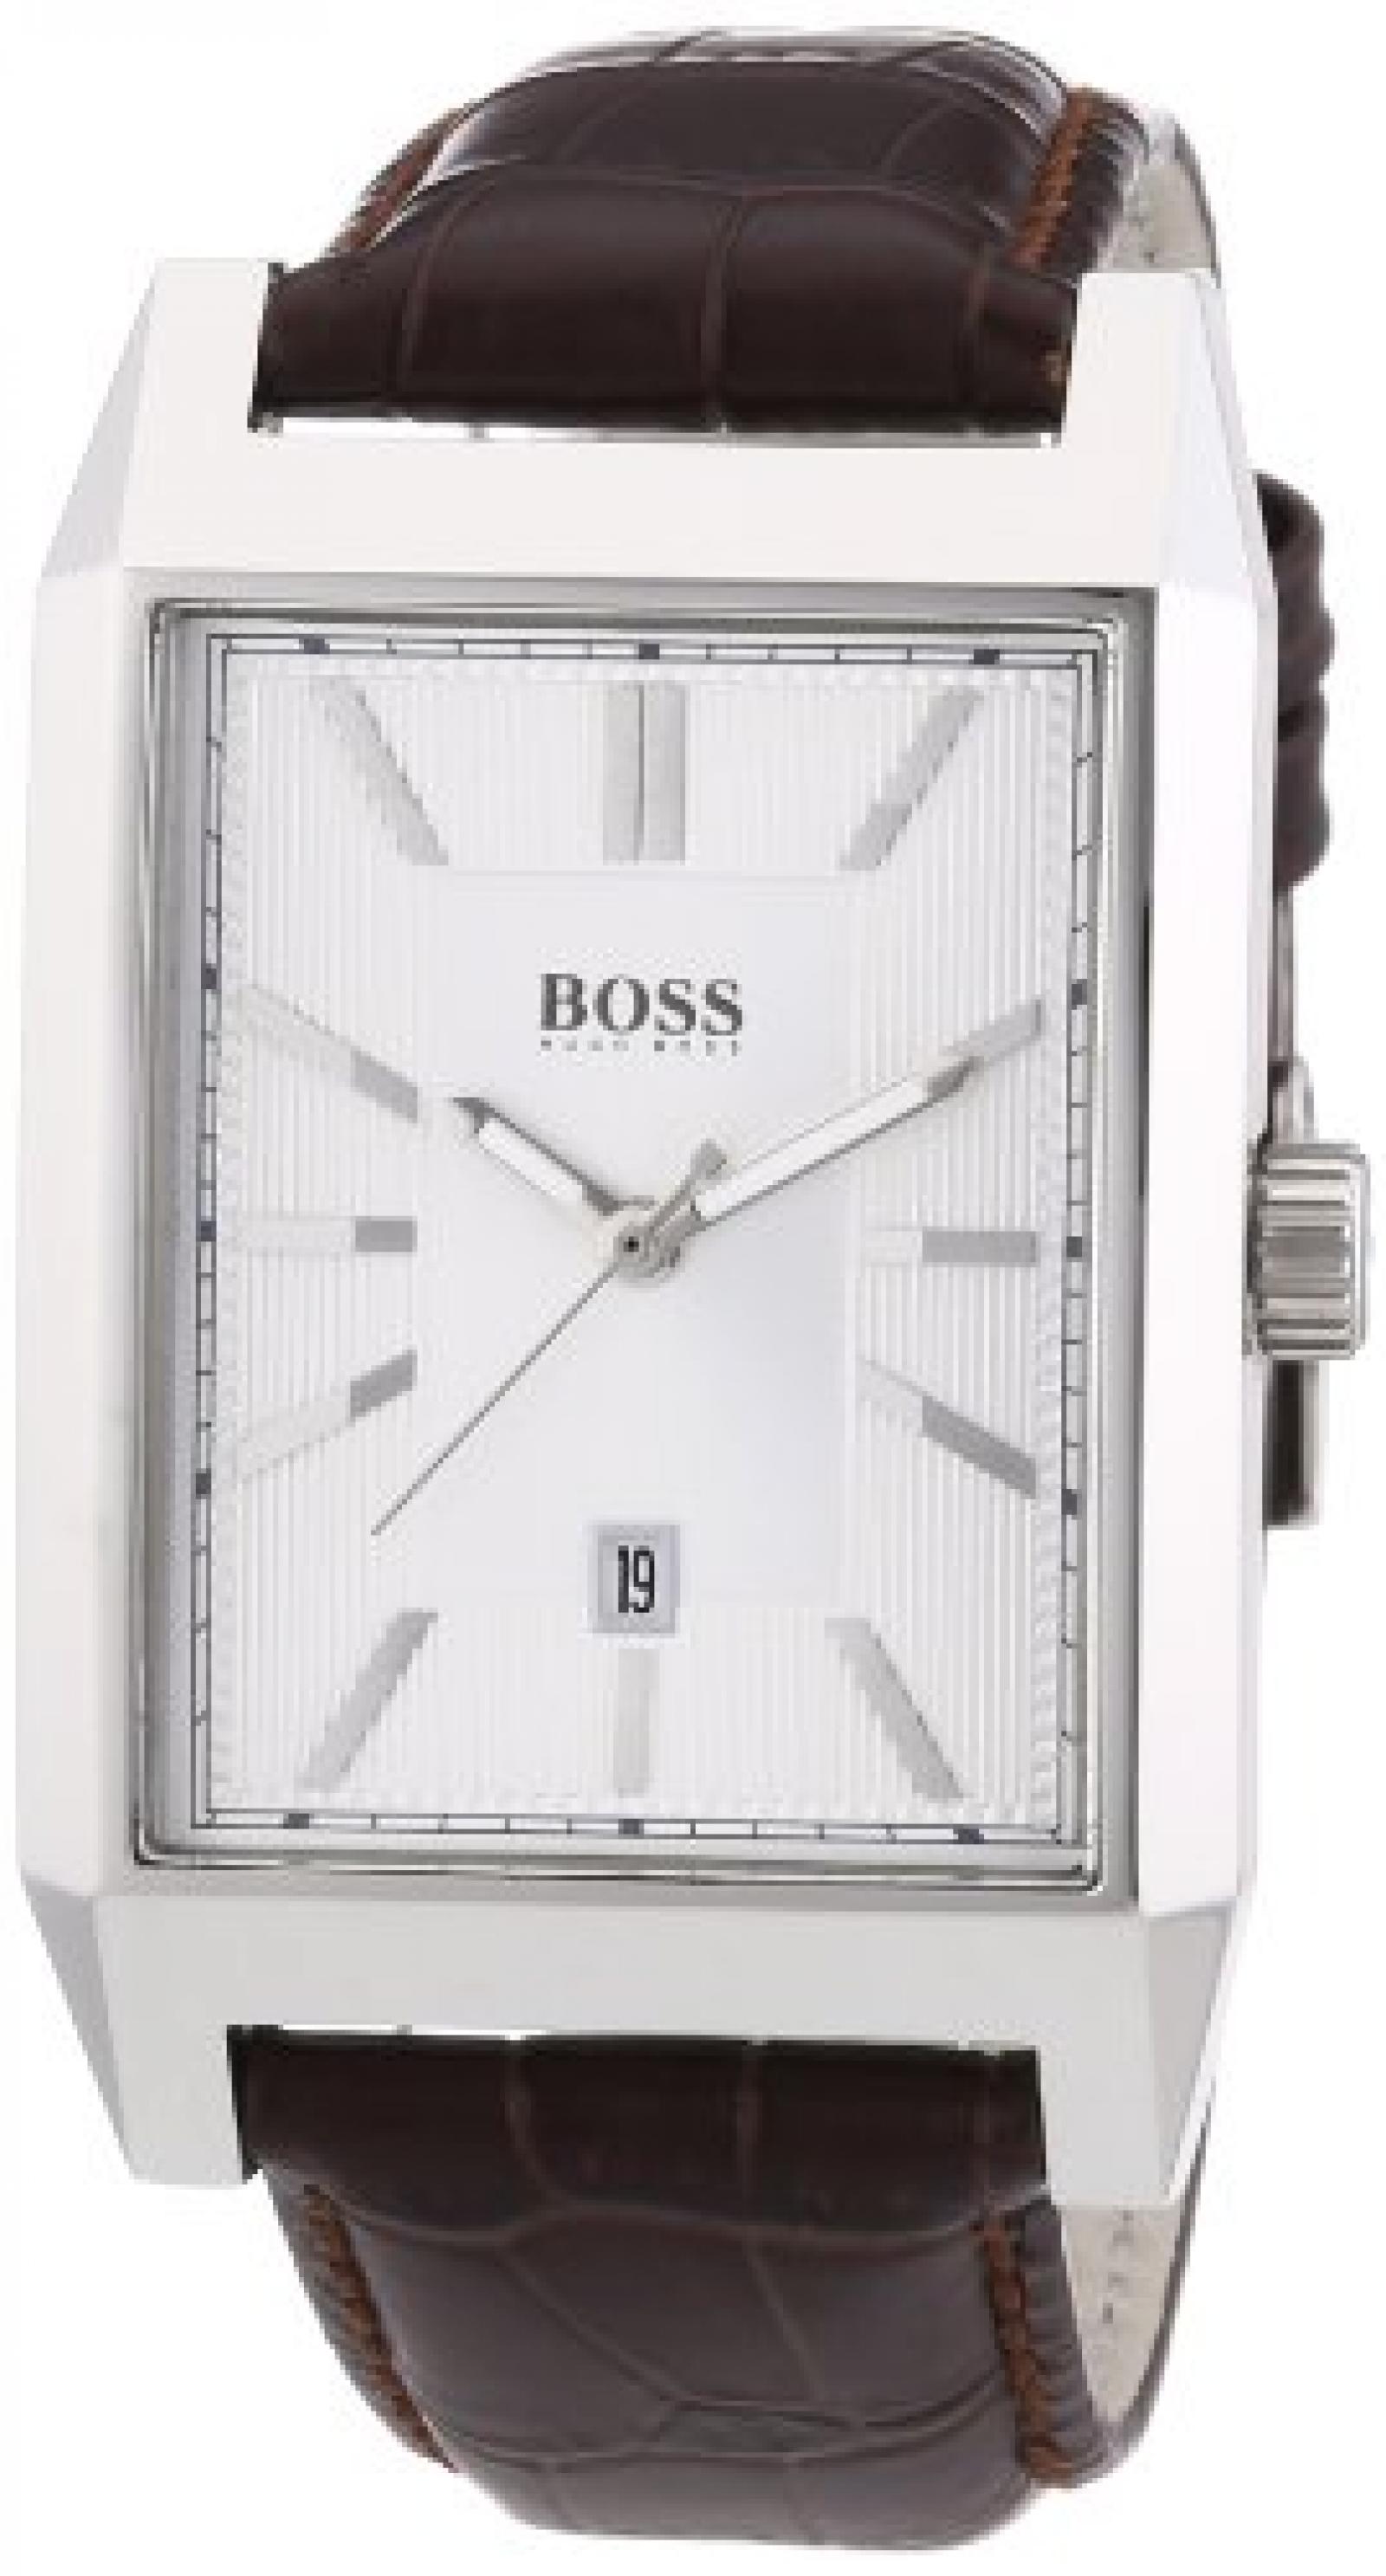 Hugo Boss Herren-Armbanduhr Analog Quarz Leder 1512916 